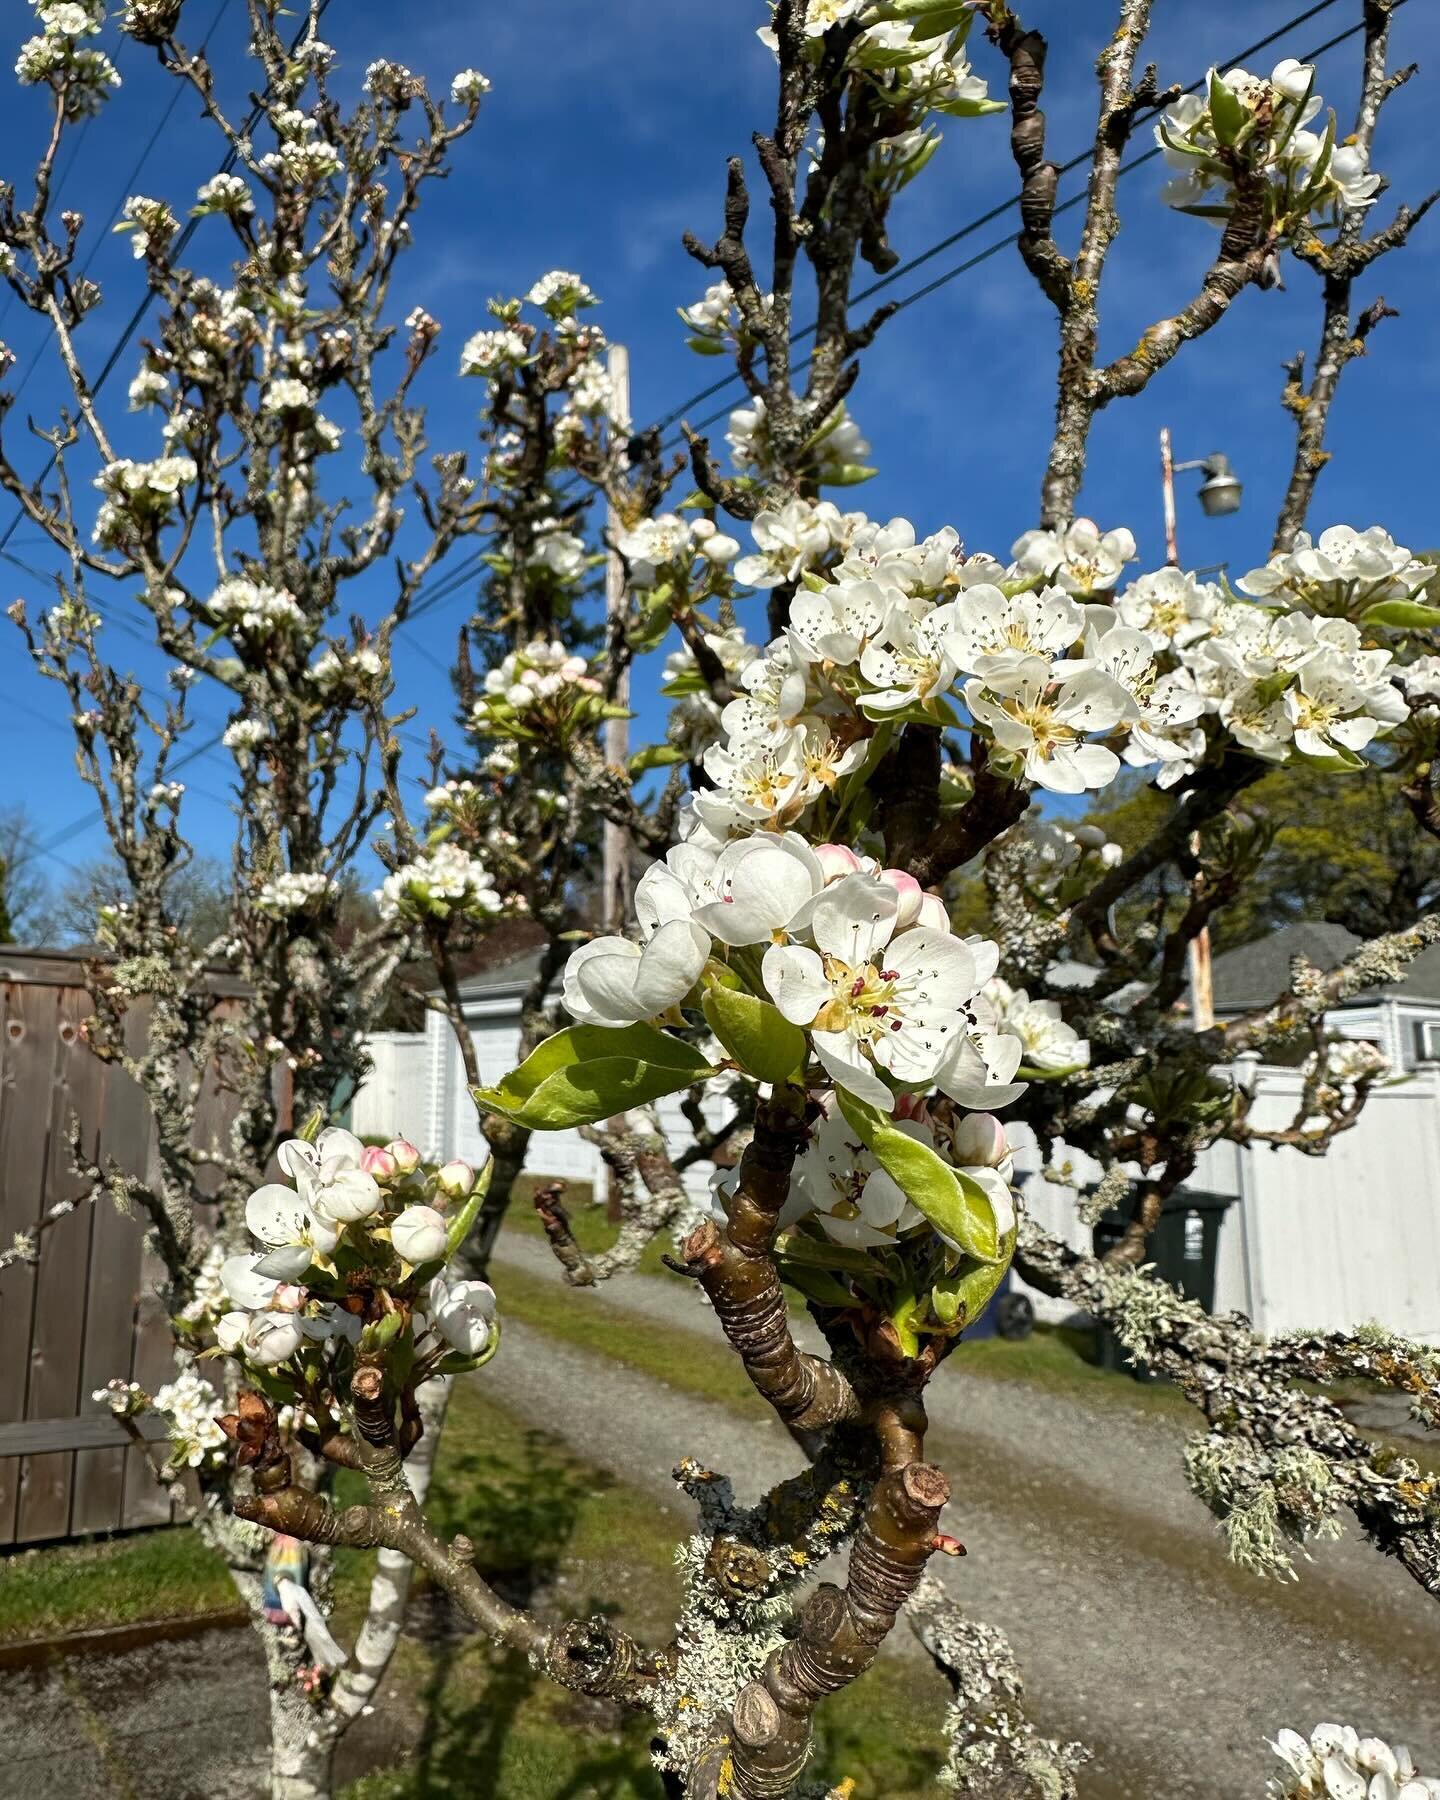 Spring in Tacoma